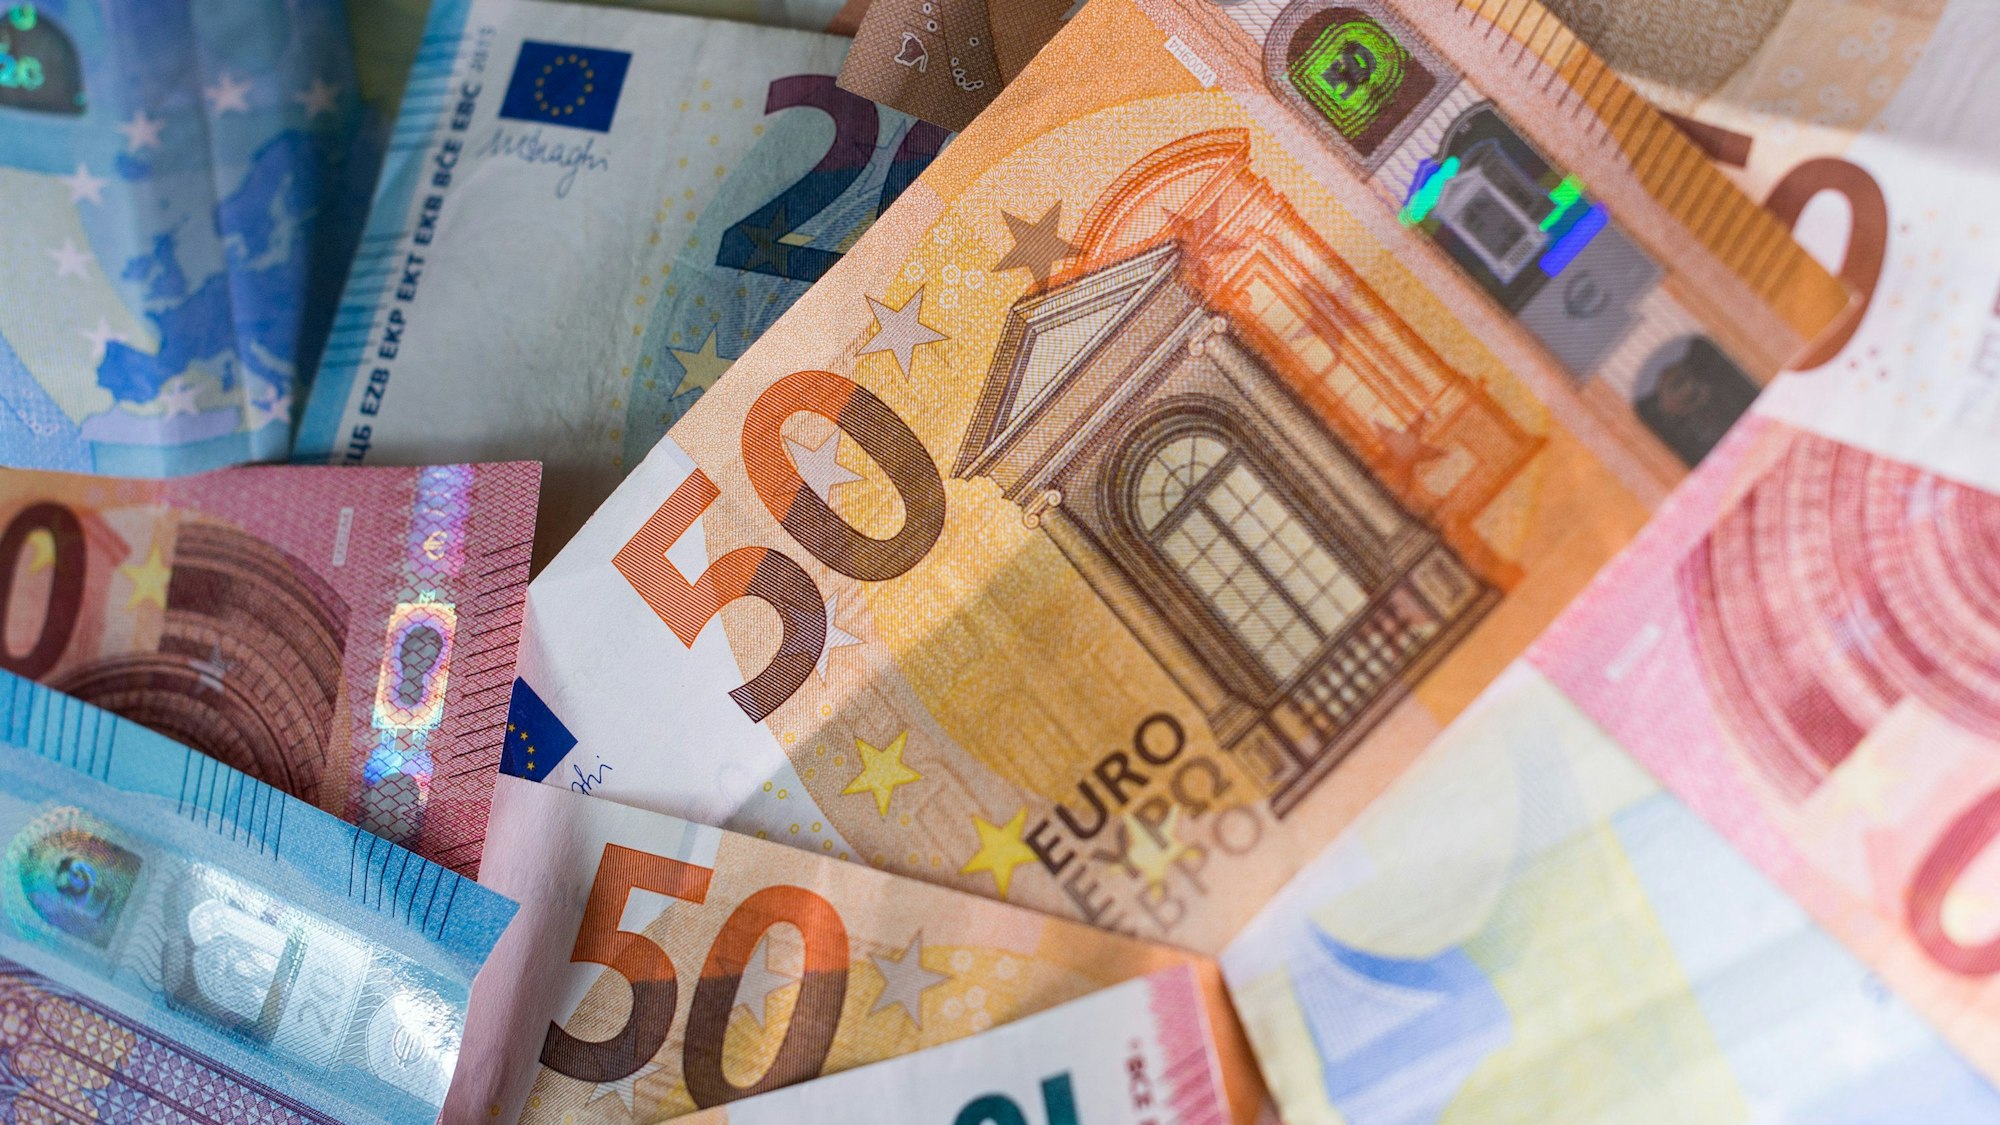 Zahlreiche Euro-Banknoten – 50er, 20er und 10er – liegen auf einem Tisch.